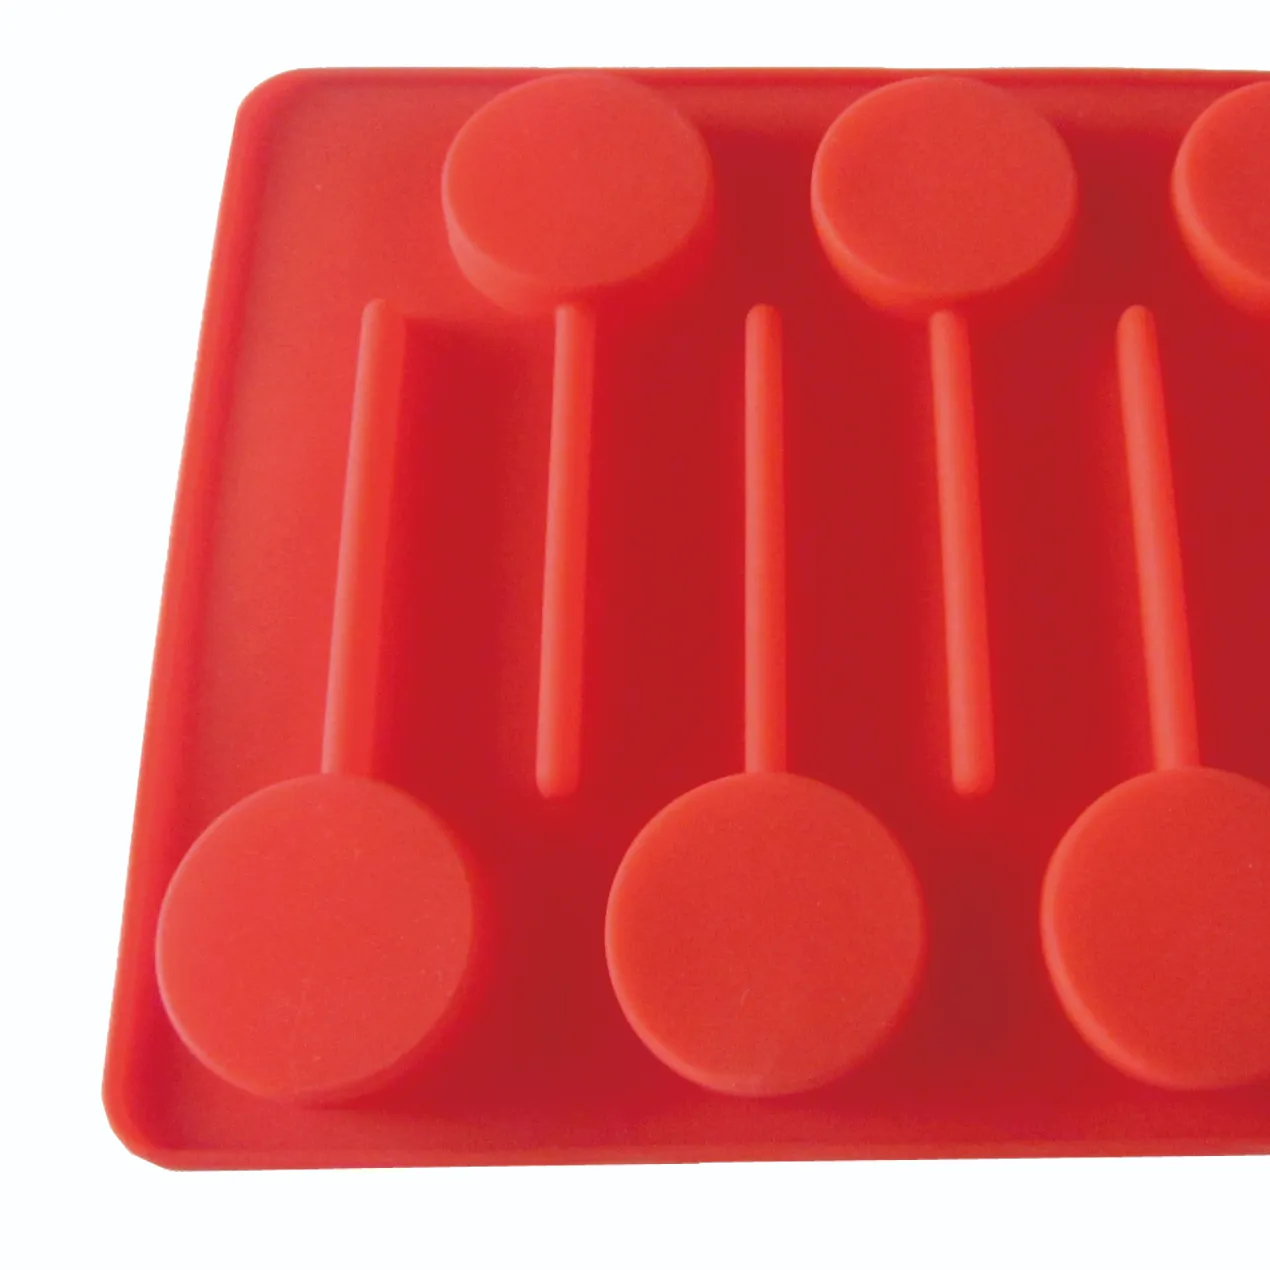 6-キャビティフードグレードシリコンDIYロリポップチョコレート作り型PPスティックベーキングモールドケーキツールタイプバッグにパッケージ化